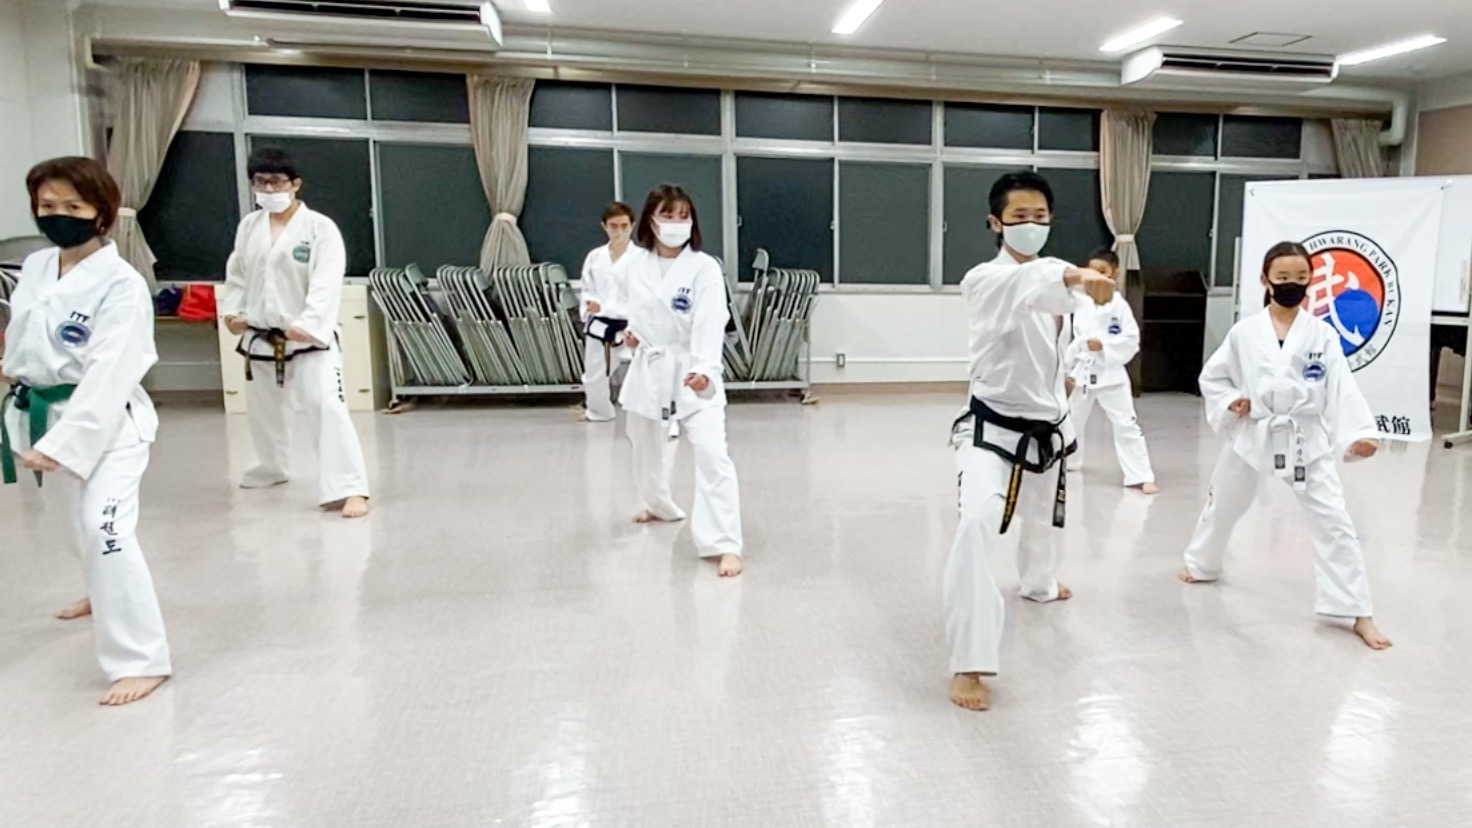 taekwondo-urawa (11)